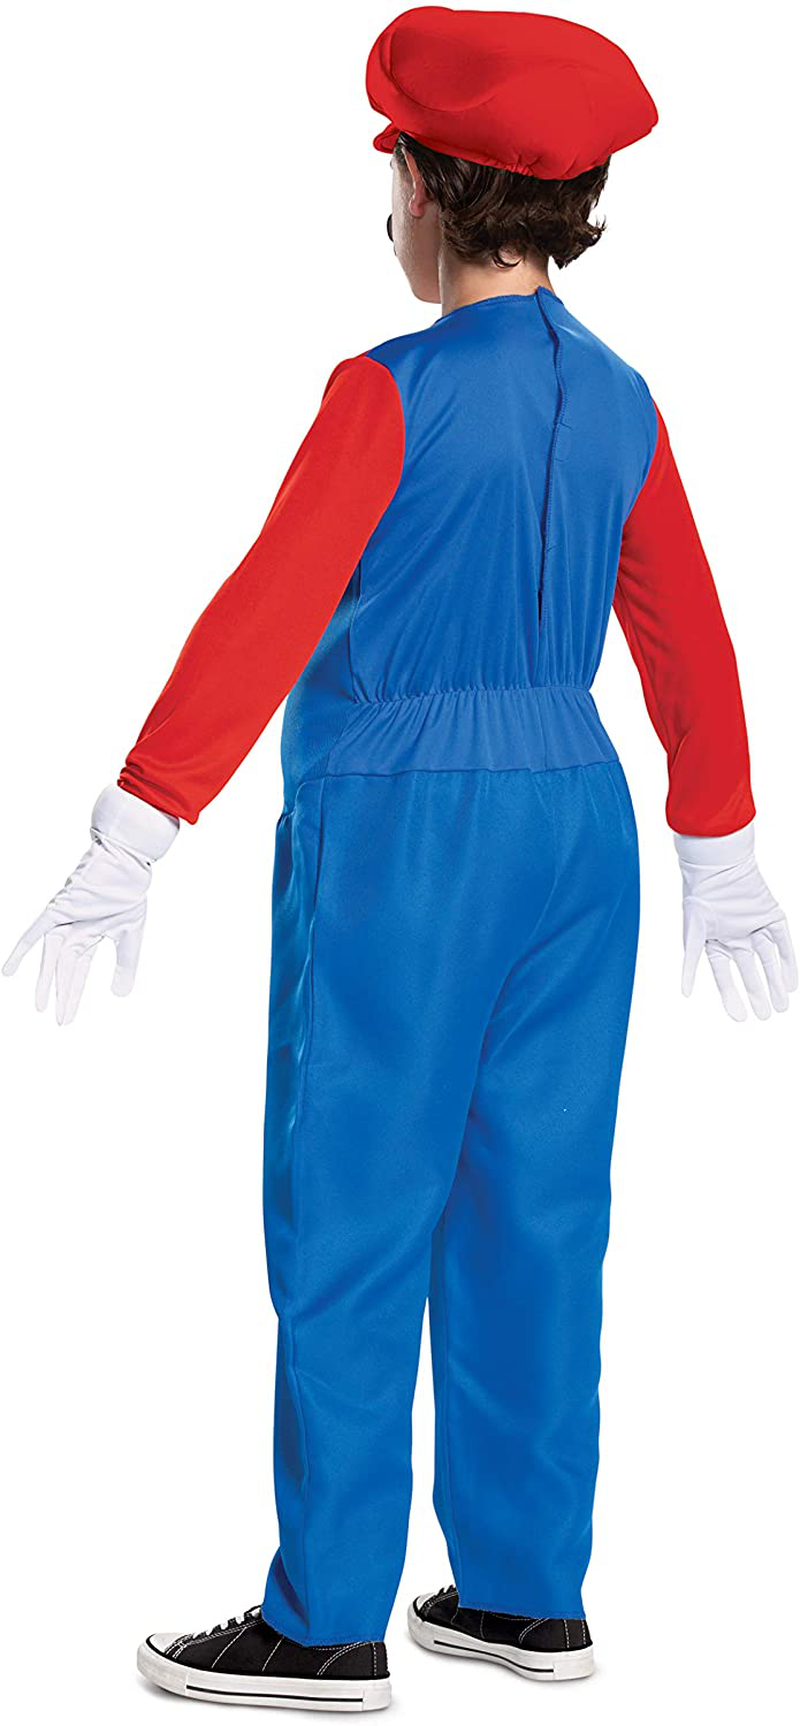 Disguise Nintendo Mario Deluxe Boys' Costume Red, M (7-8) Apparel & Accessories > Costumes & Accessories > Costumes Disguise   